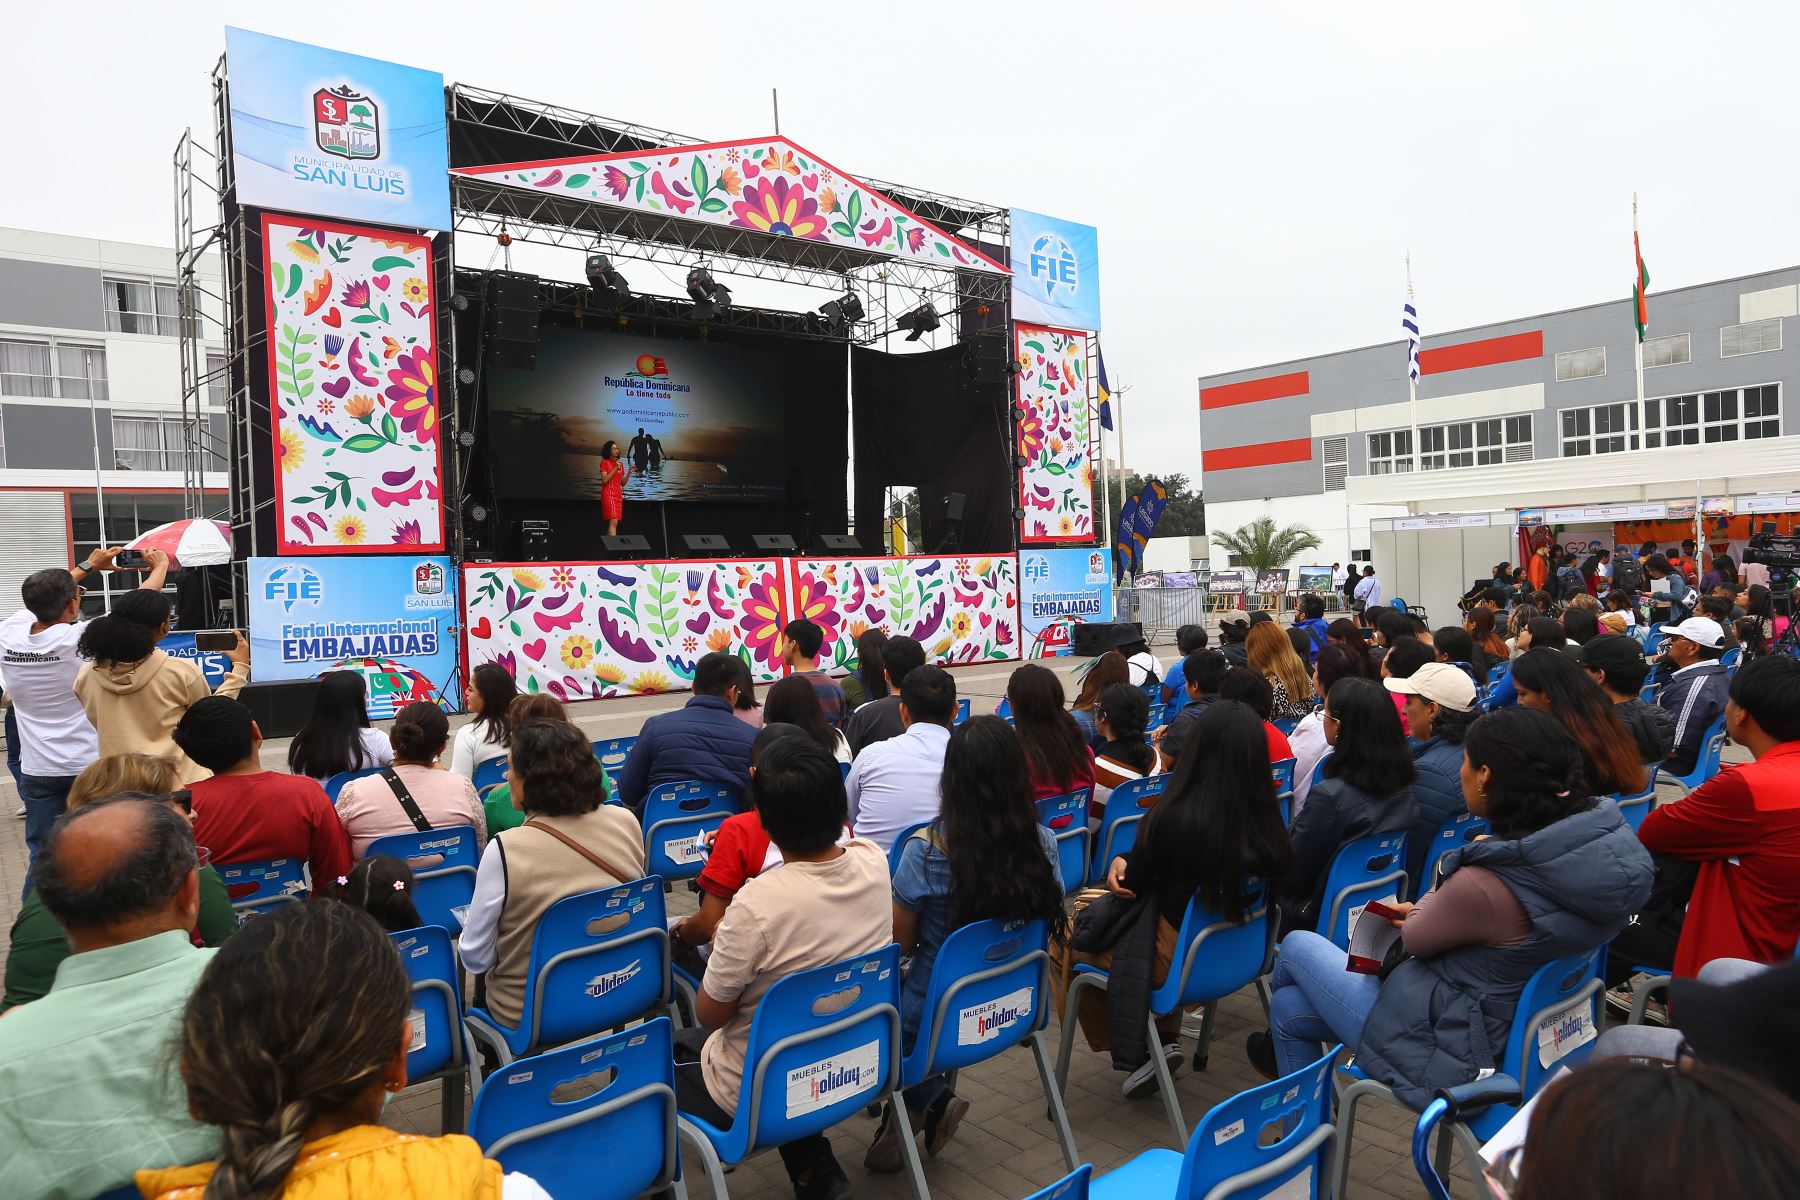 En la sede Legado Videna se realiza la  primera Feria Internacional de Embajadas del Perú  con la participación de más de 30 embajadas y delegaciones.En la imagen, stand de la Embajada de México.
Foto: ANDINA/ Eddy Ramos